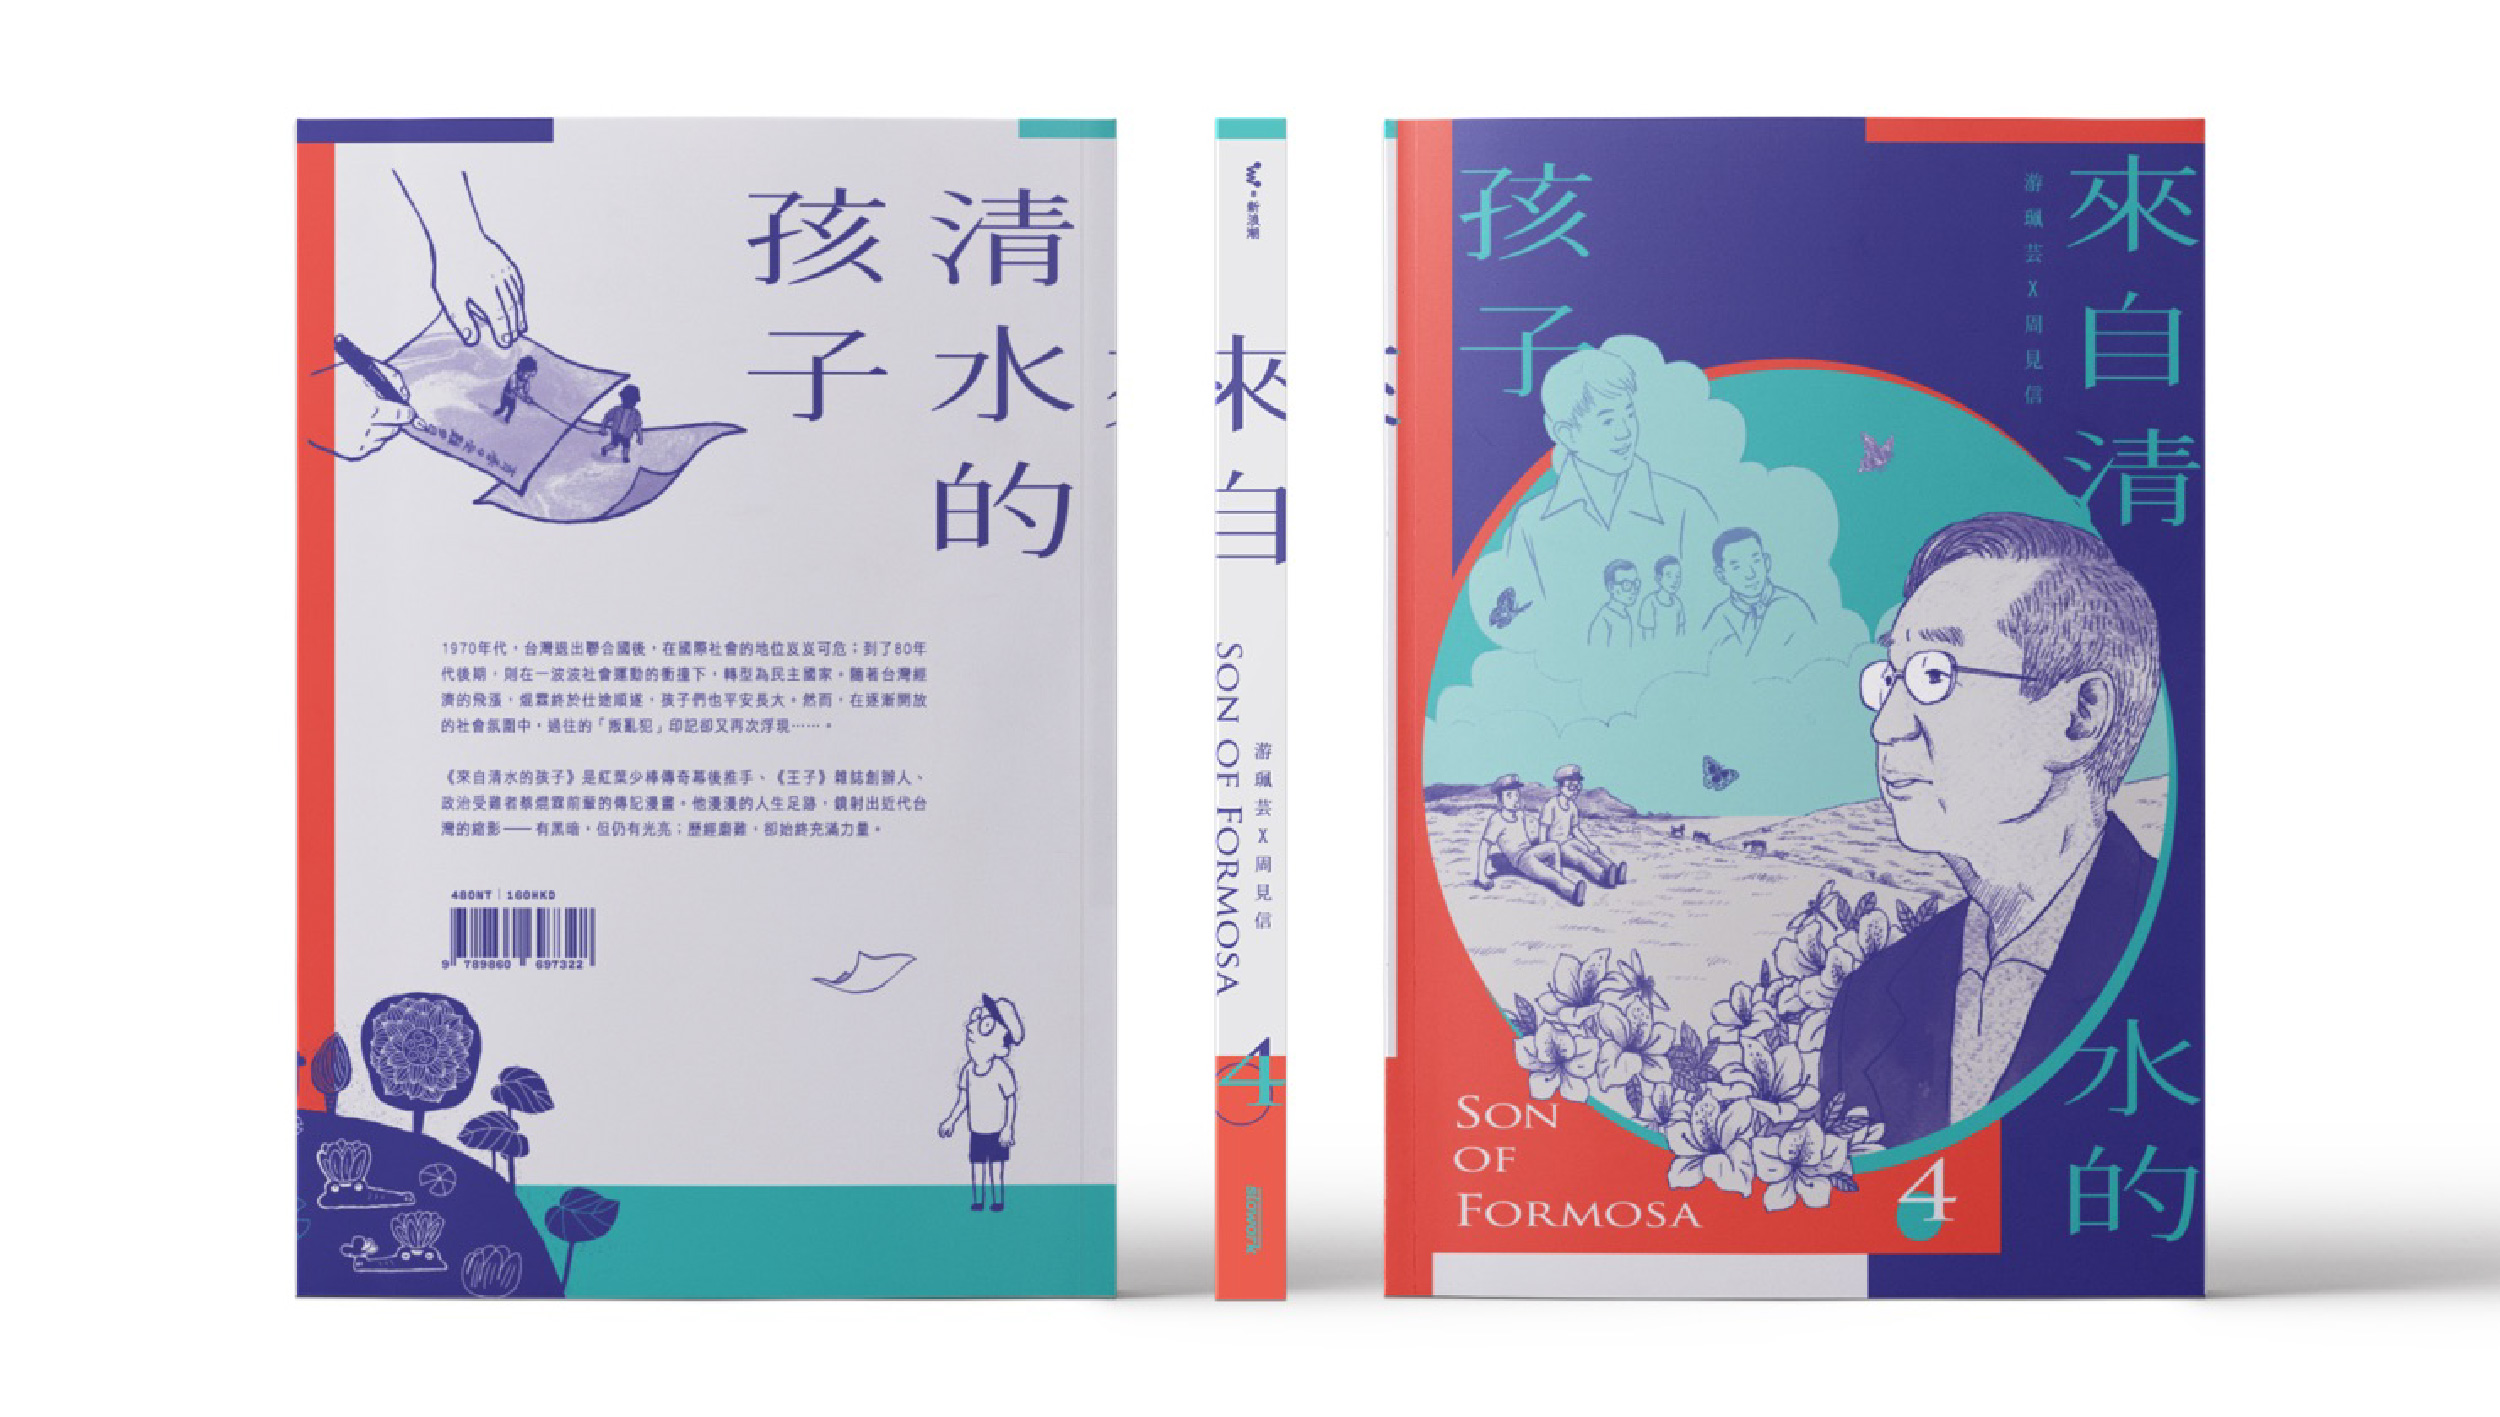 台灣漫畫《來自清水的孩子》最終回〈化作千風〉上市 拍謝少年汲靈感  同步發布〈時代看顧正義的人〉MV